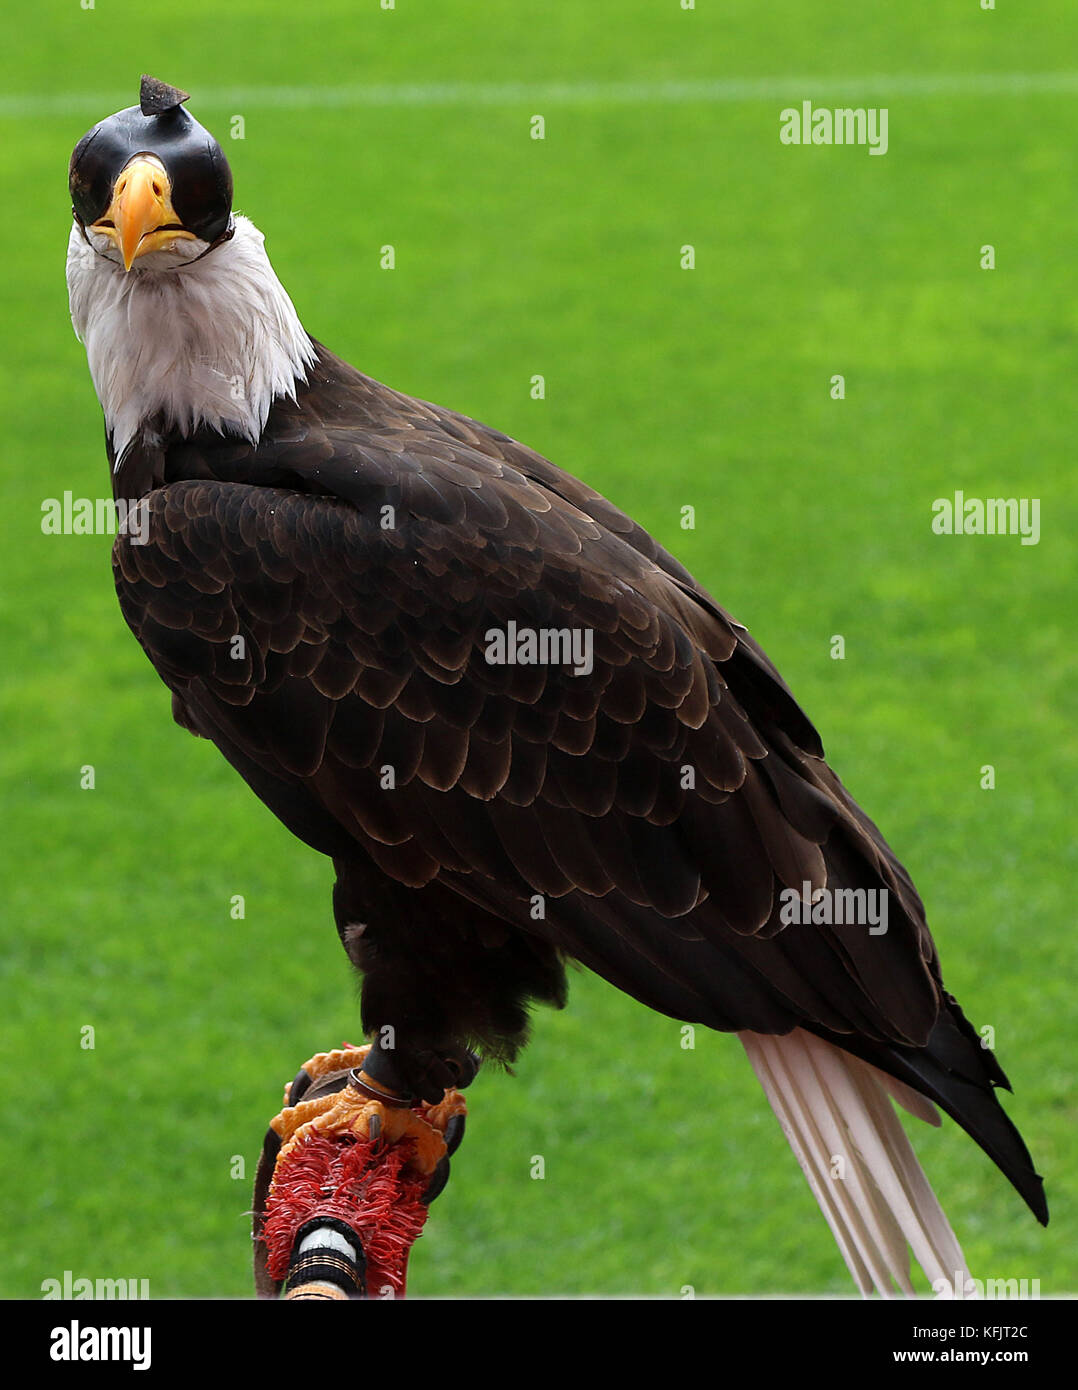 çguia Vit – ria (Victory Eagle), Maskottchen des Benfica Football Club. Der Adler fliegt vor jedem Fußballspiel um den Boden Stockfoto